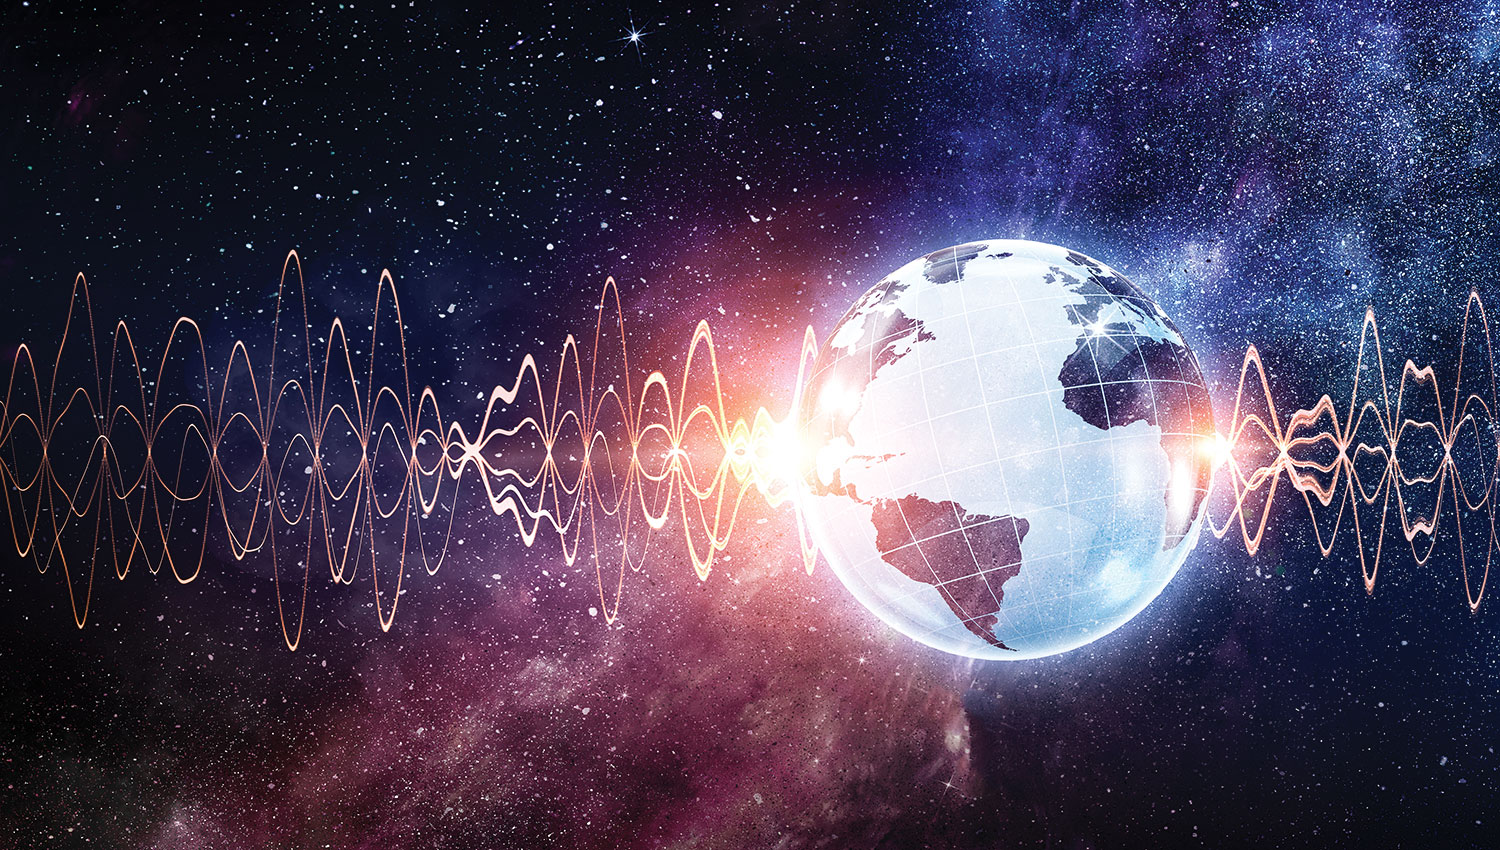 Les 10 sons les plus bruyants jamais enregistrés sur Terre